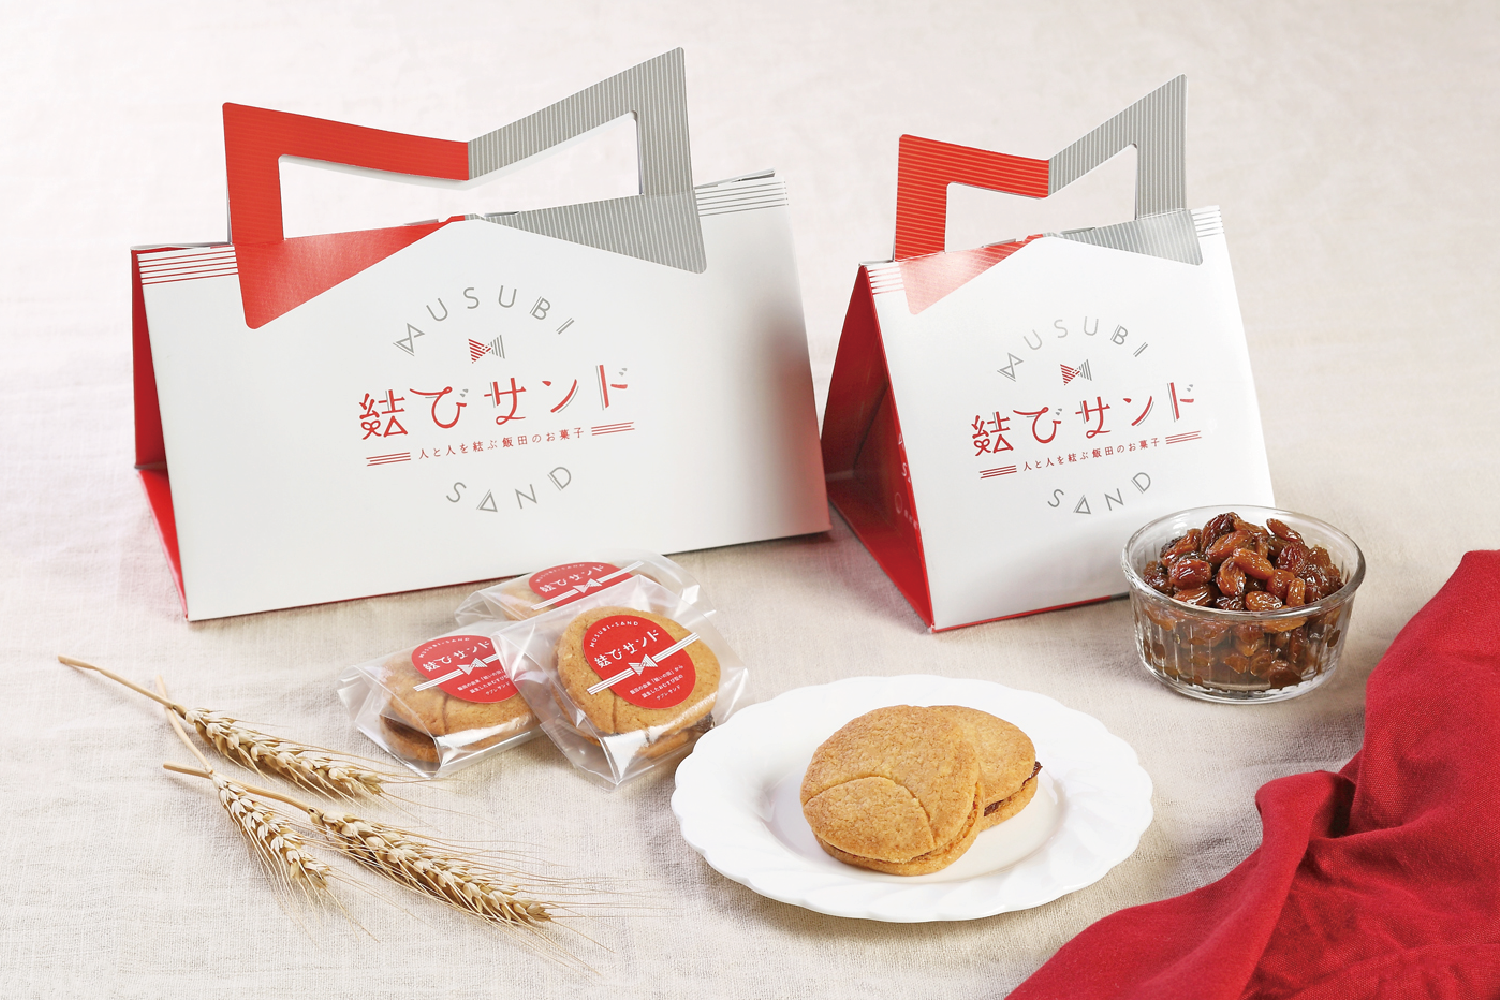 長野県飯田市の地域性を表現した和洋折衷のお菓子『結びサンド』が誕生